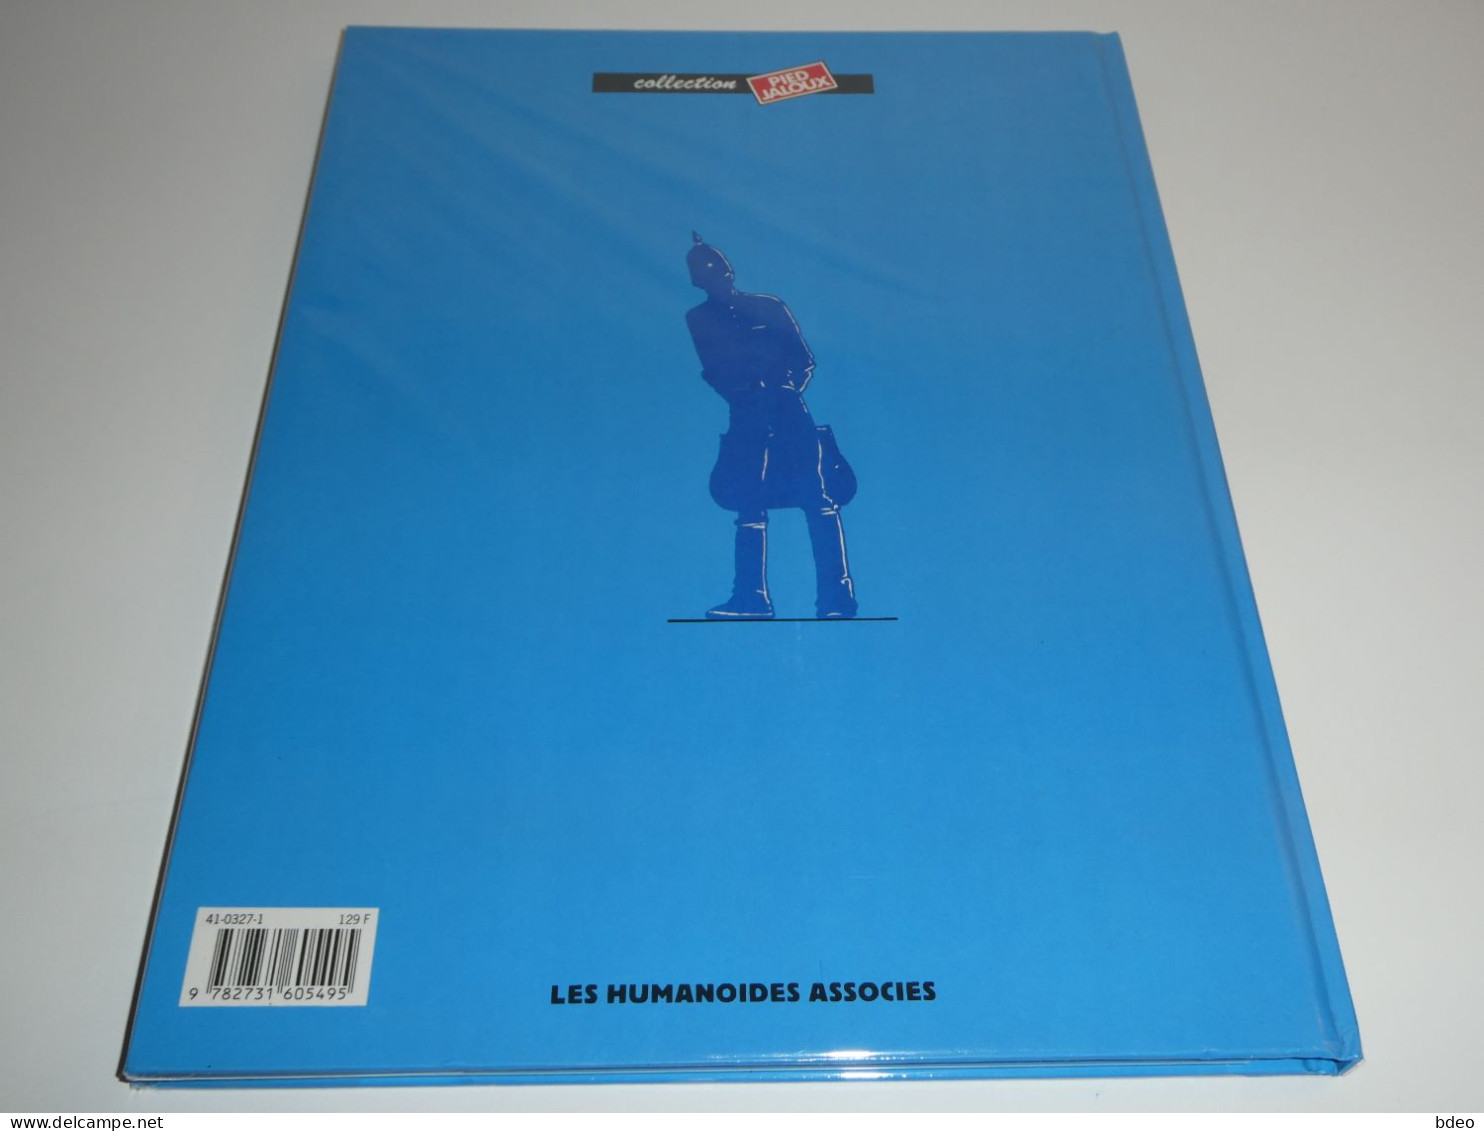 LE GARAGE HERMETIQUE + POSTER / MAJOR FATAL / MOEBIUS - Editions Originales (langue Française)